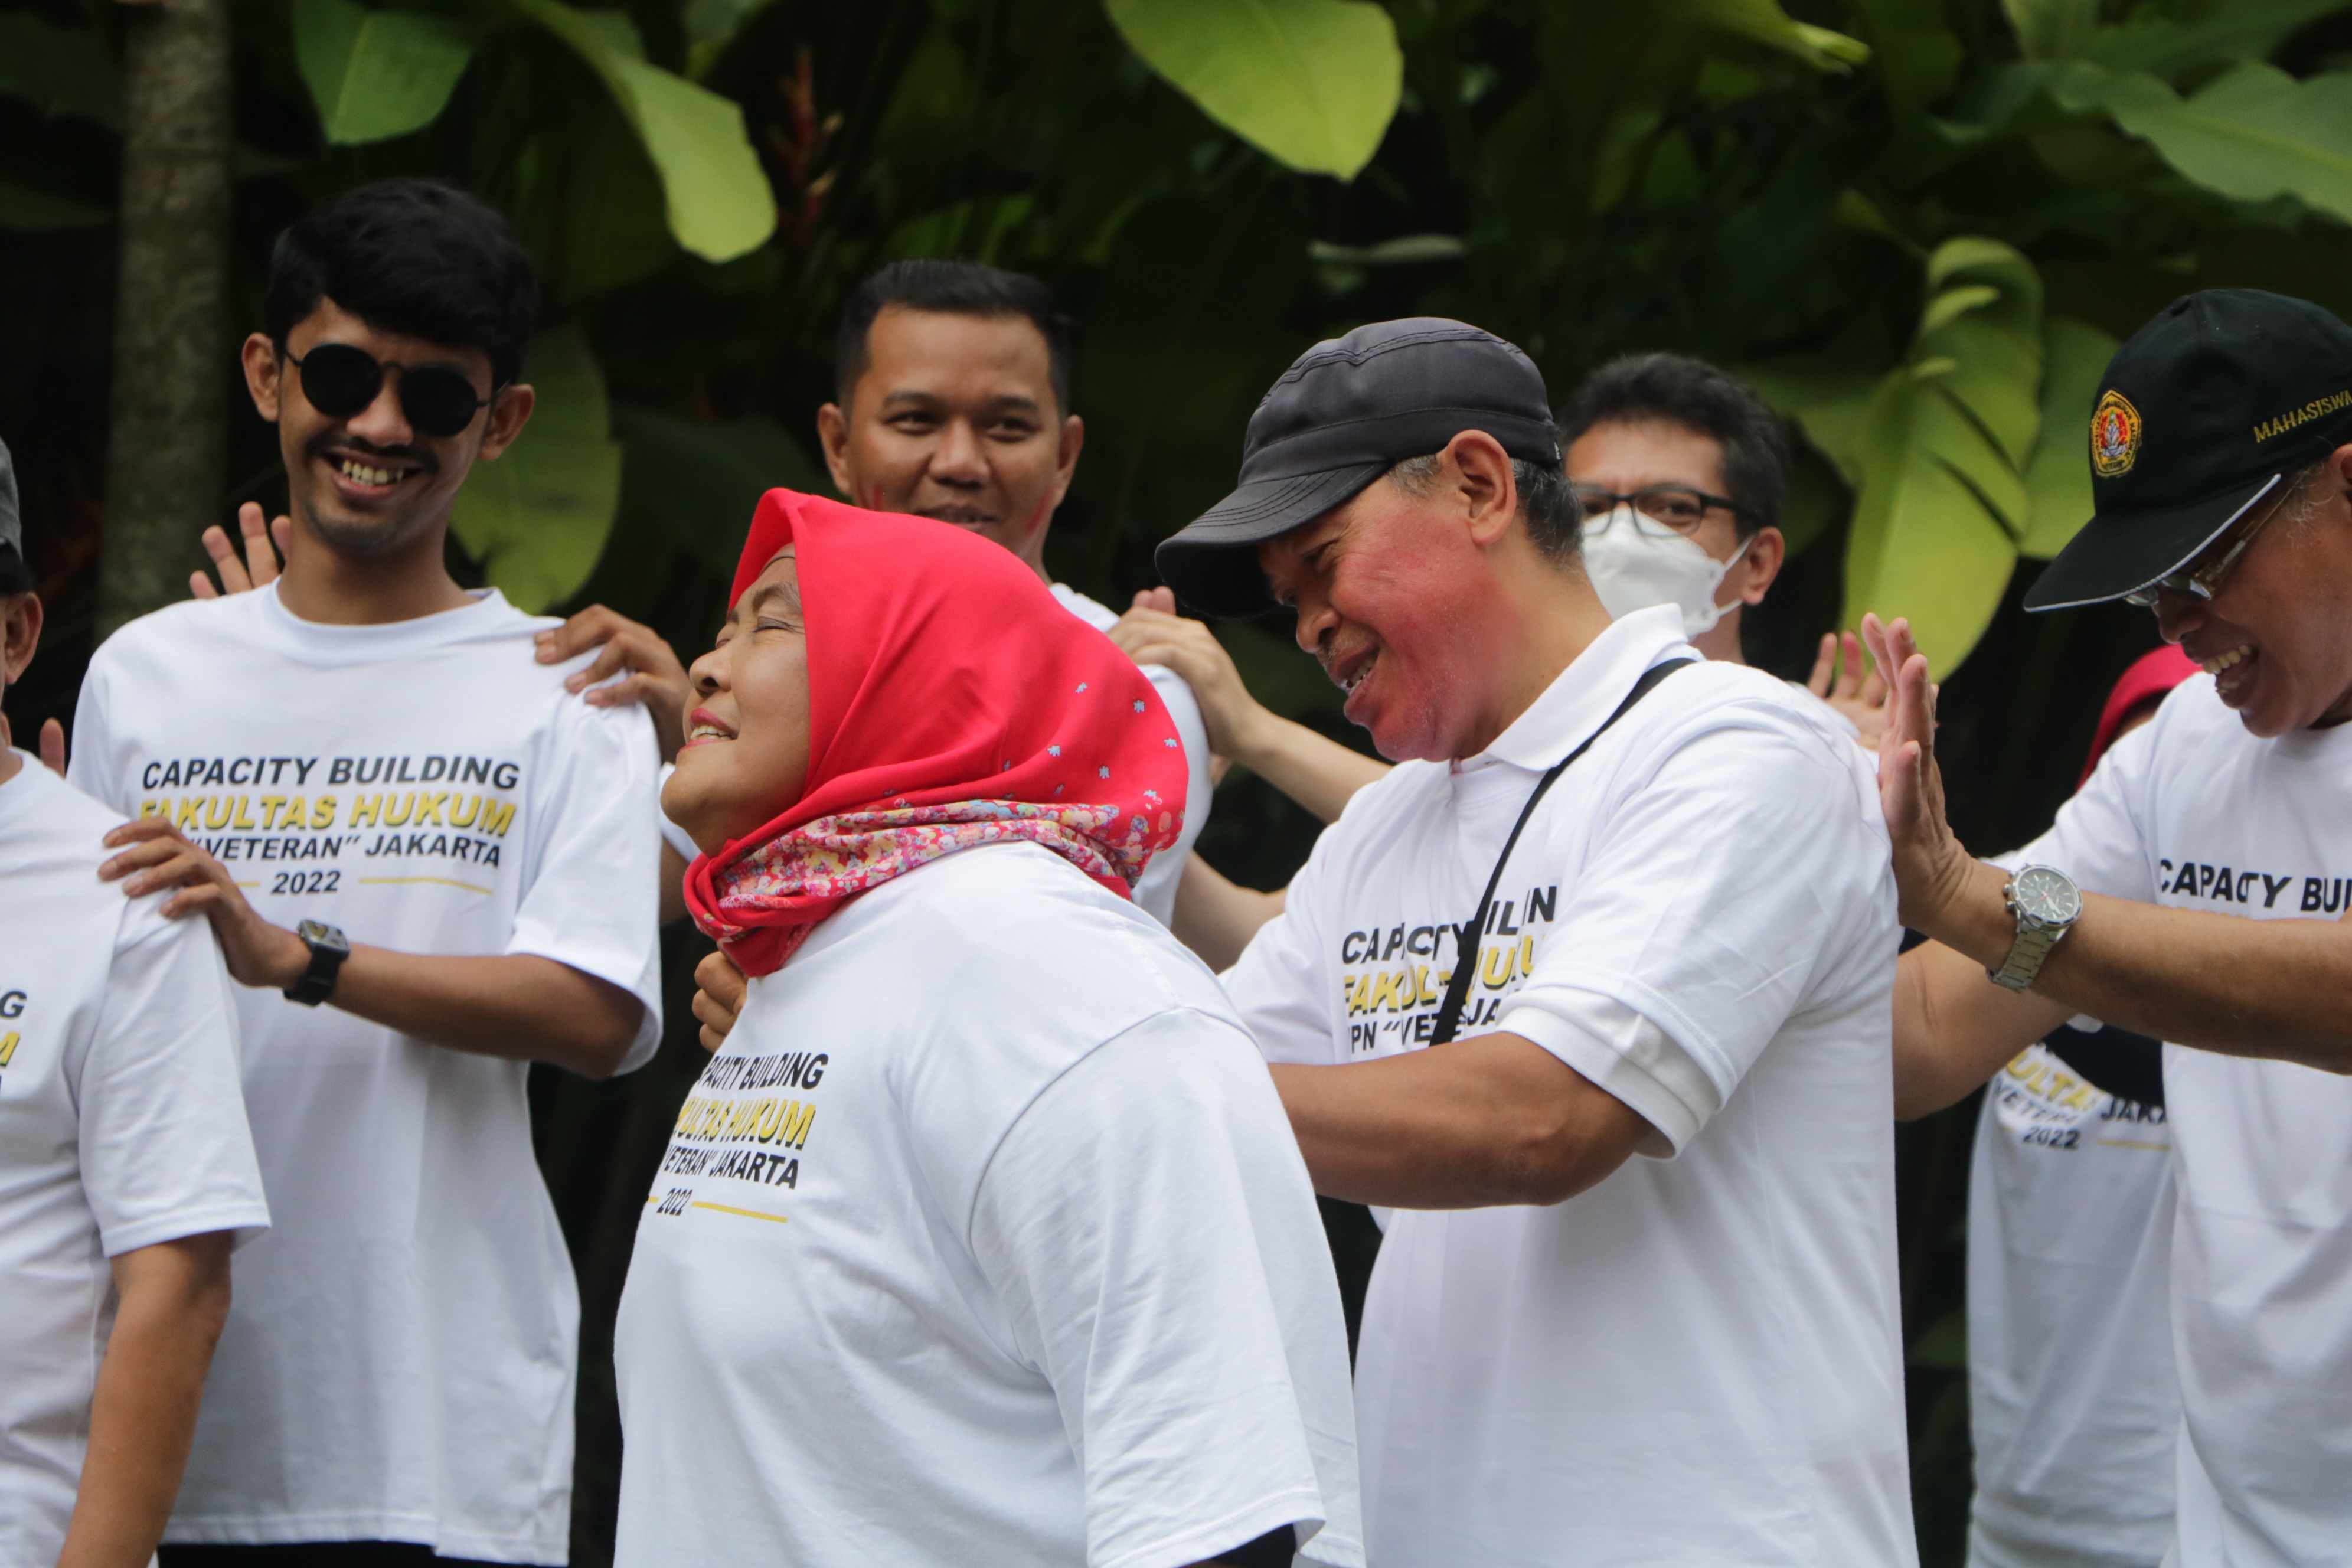 “Membangun Kebersamaan Menuju Fakultas Hukum yang Unggul” Capacity Building Fakultas Hukum Universitas Pembangunan Nasional “Veteran” Jakarta (112)